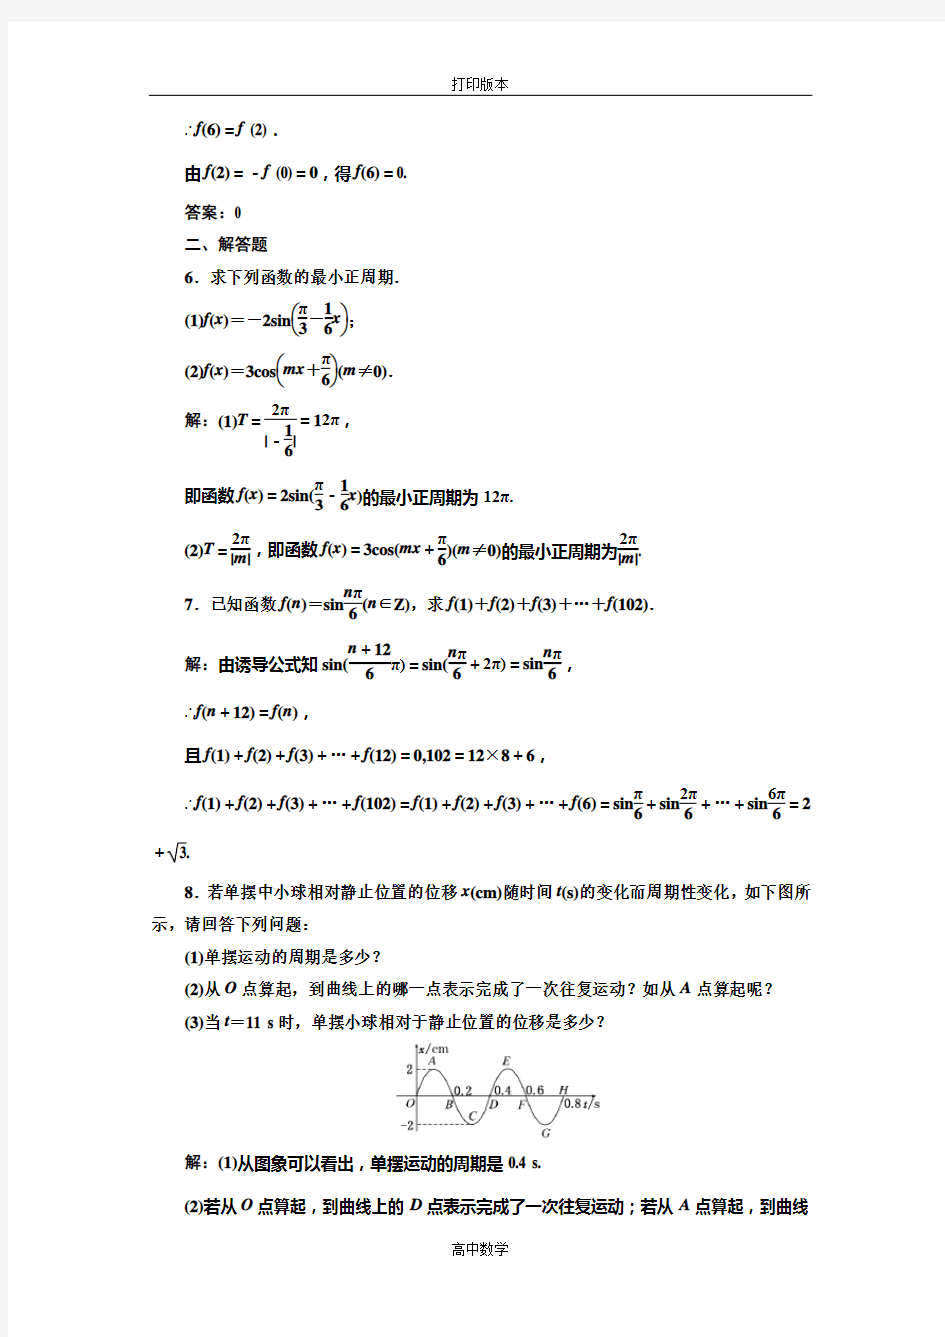 苏教版数学高一必修四 作业 1.3.1三角函数的周期性